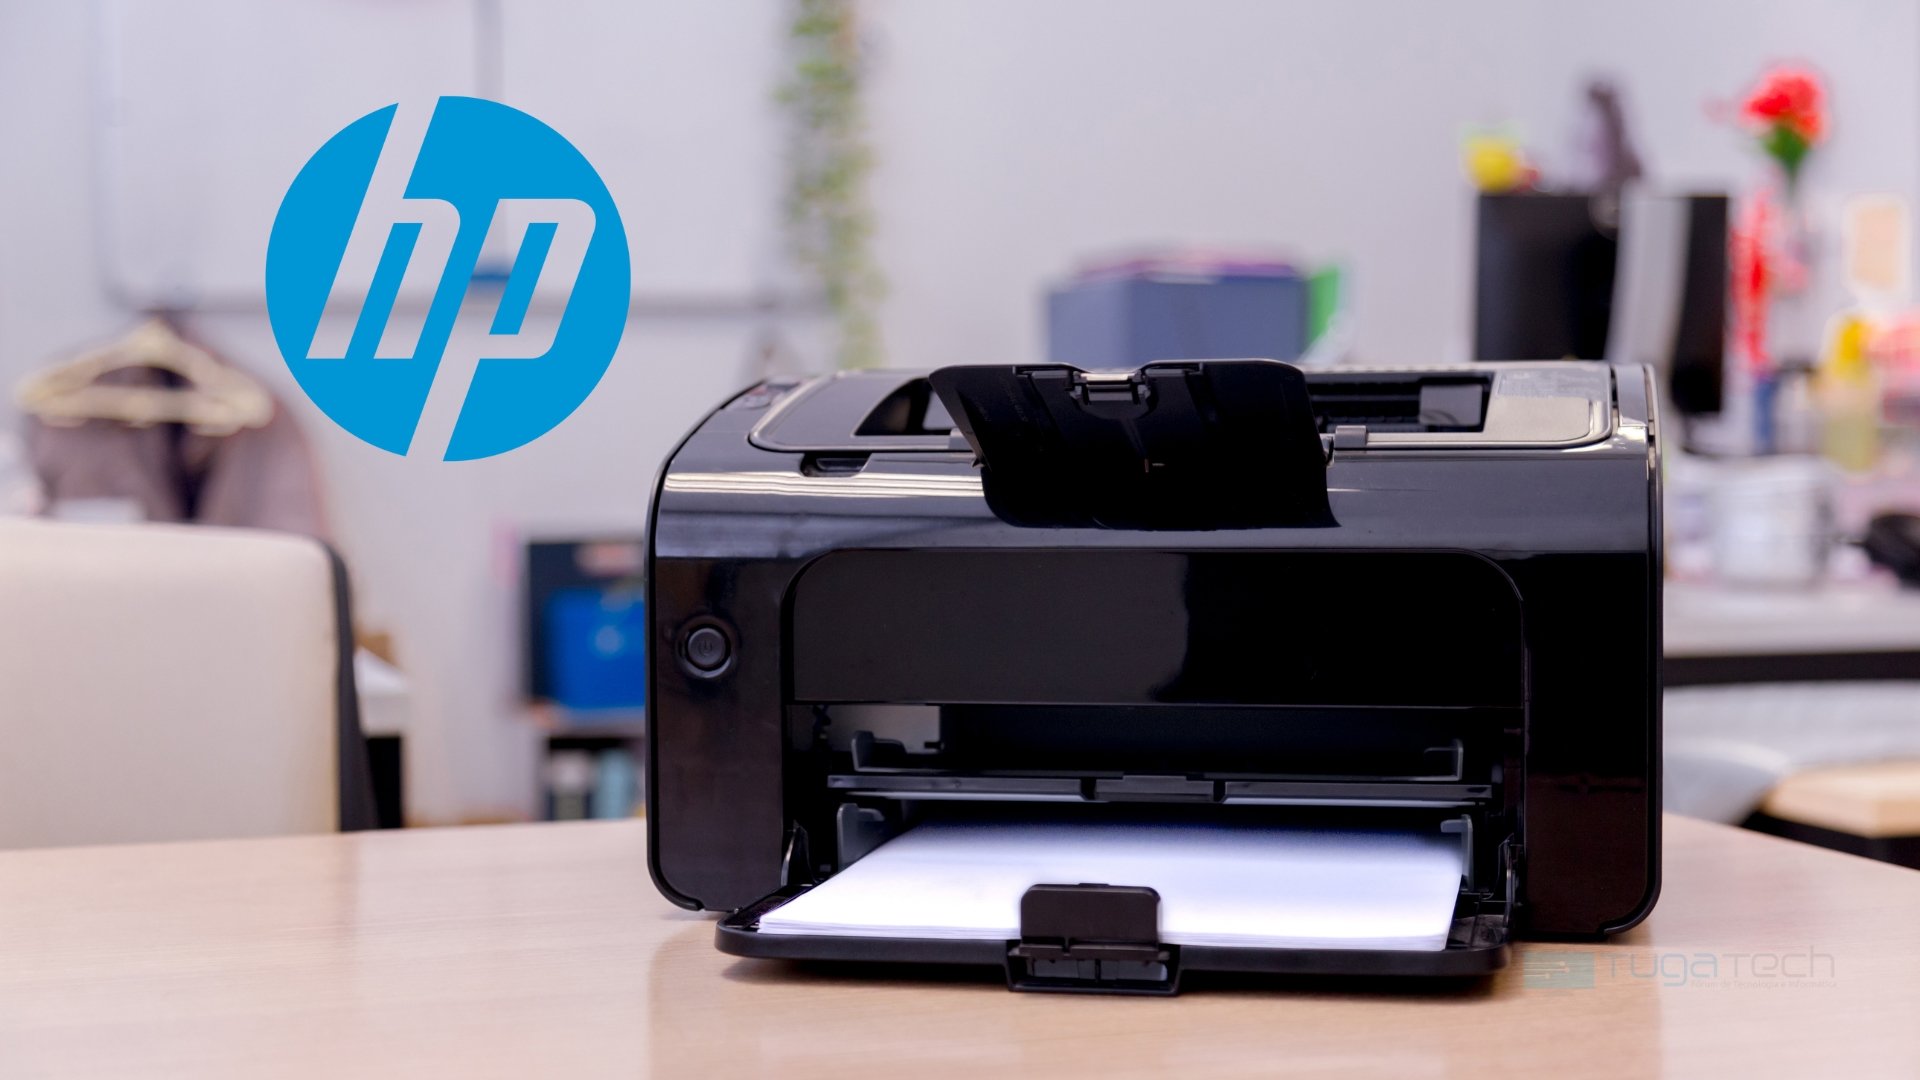 Impressora com o símbolo da HP